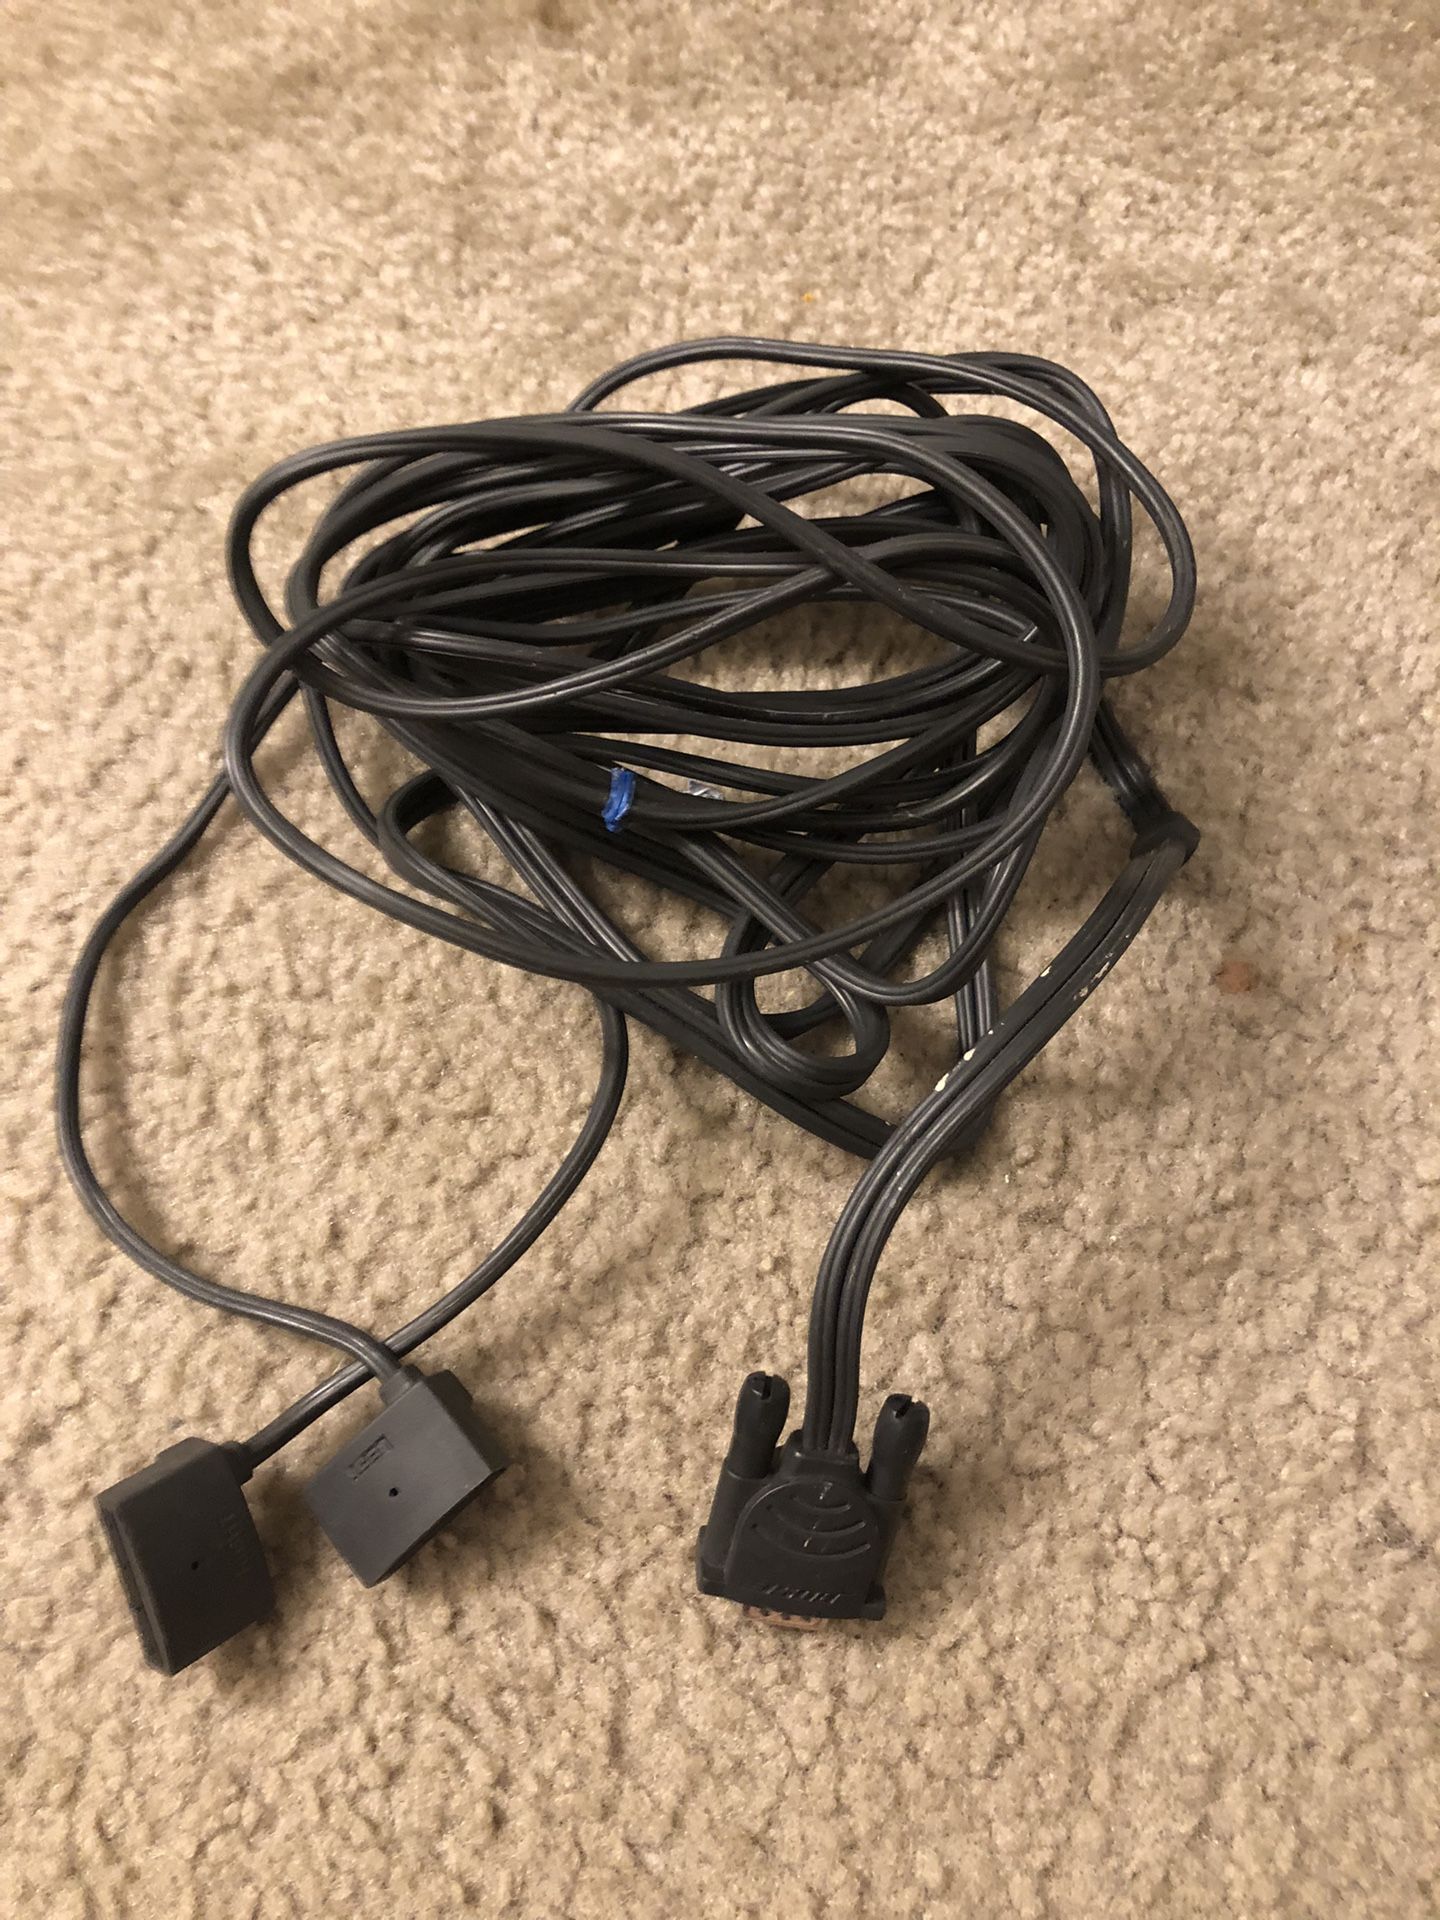 Bose AV 123 Series 2,3 Speaker Cable Cord